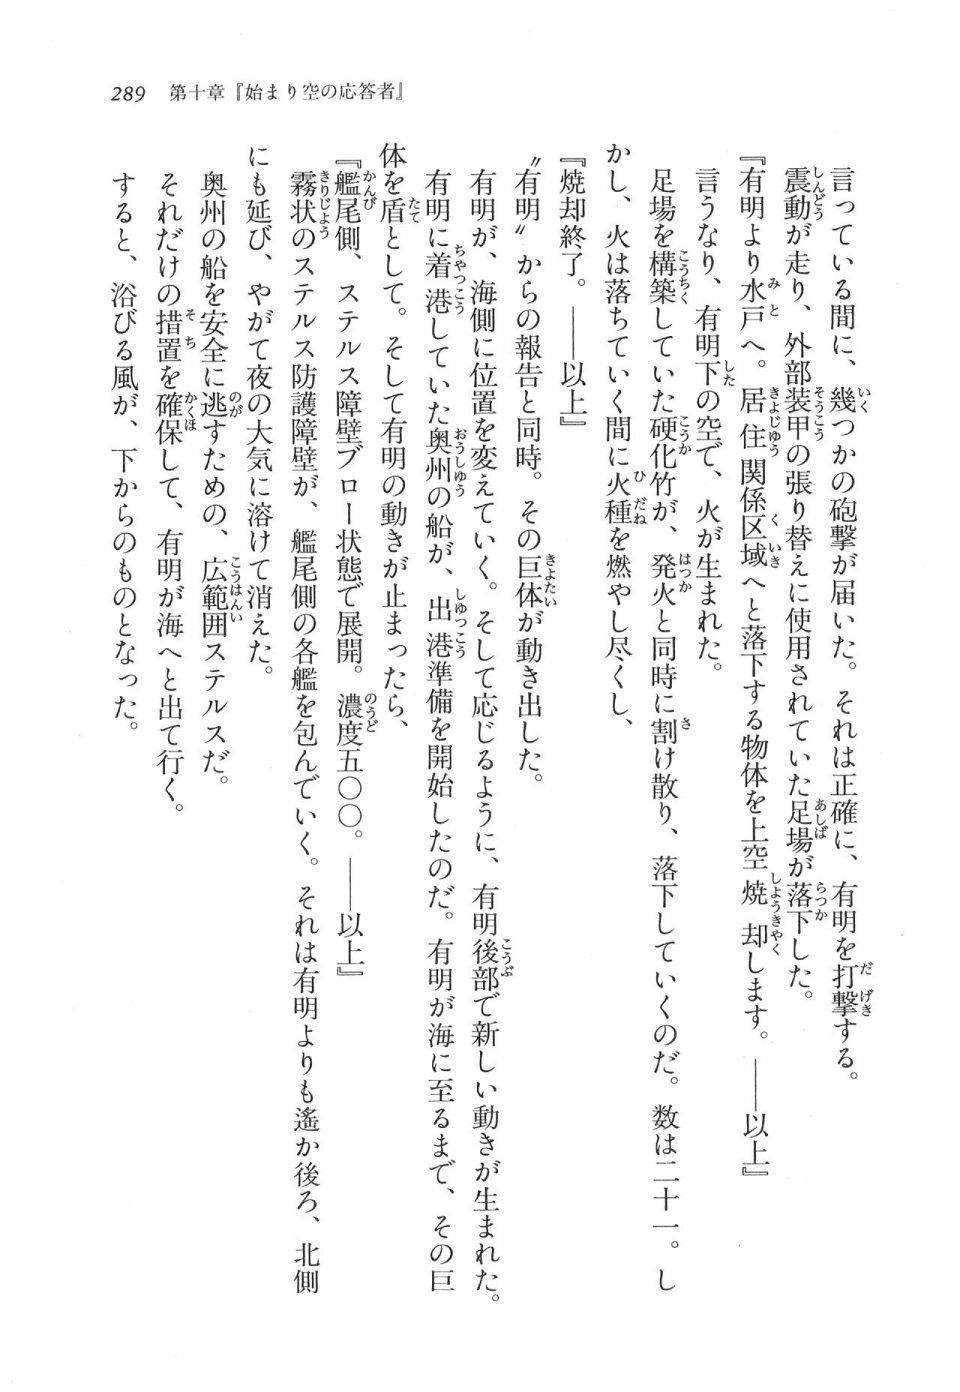 Kyoukai Senjou no Horizon LN Vol 11(5A) - Photo #289